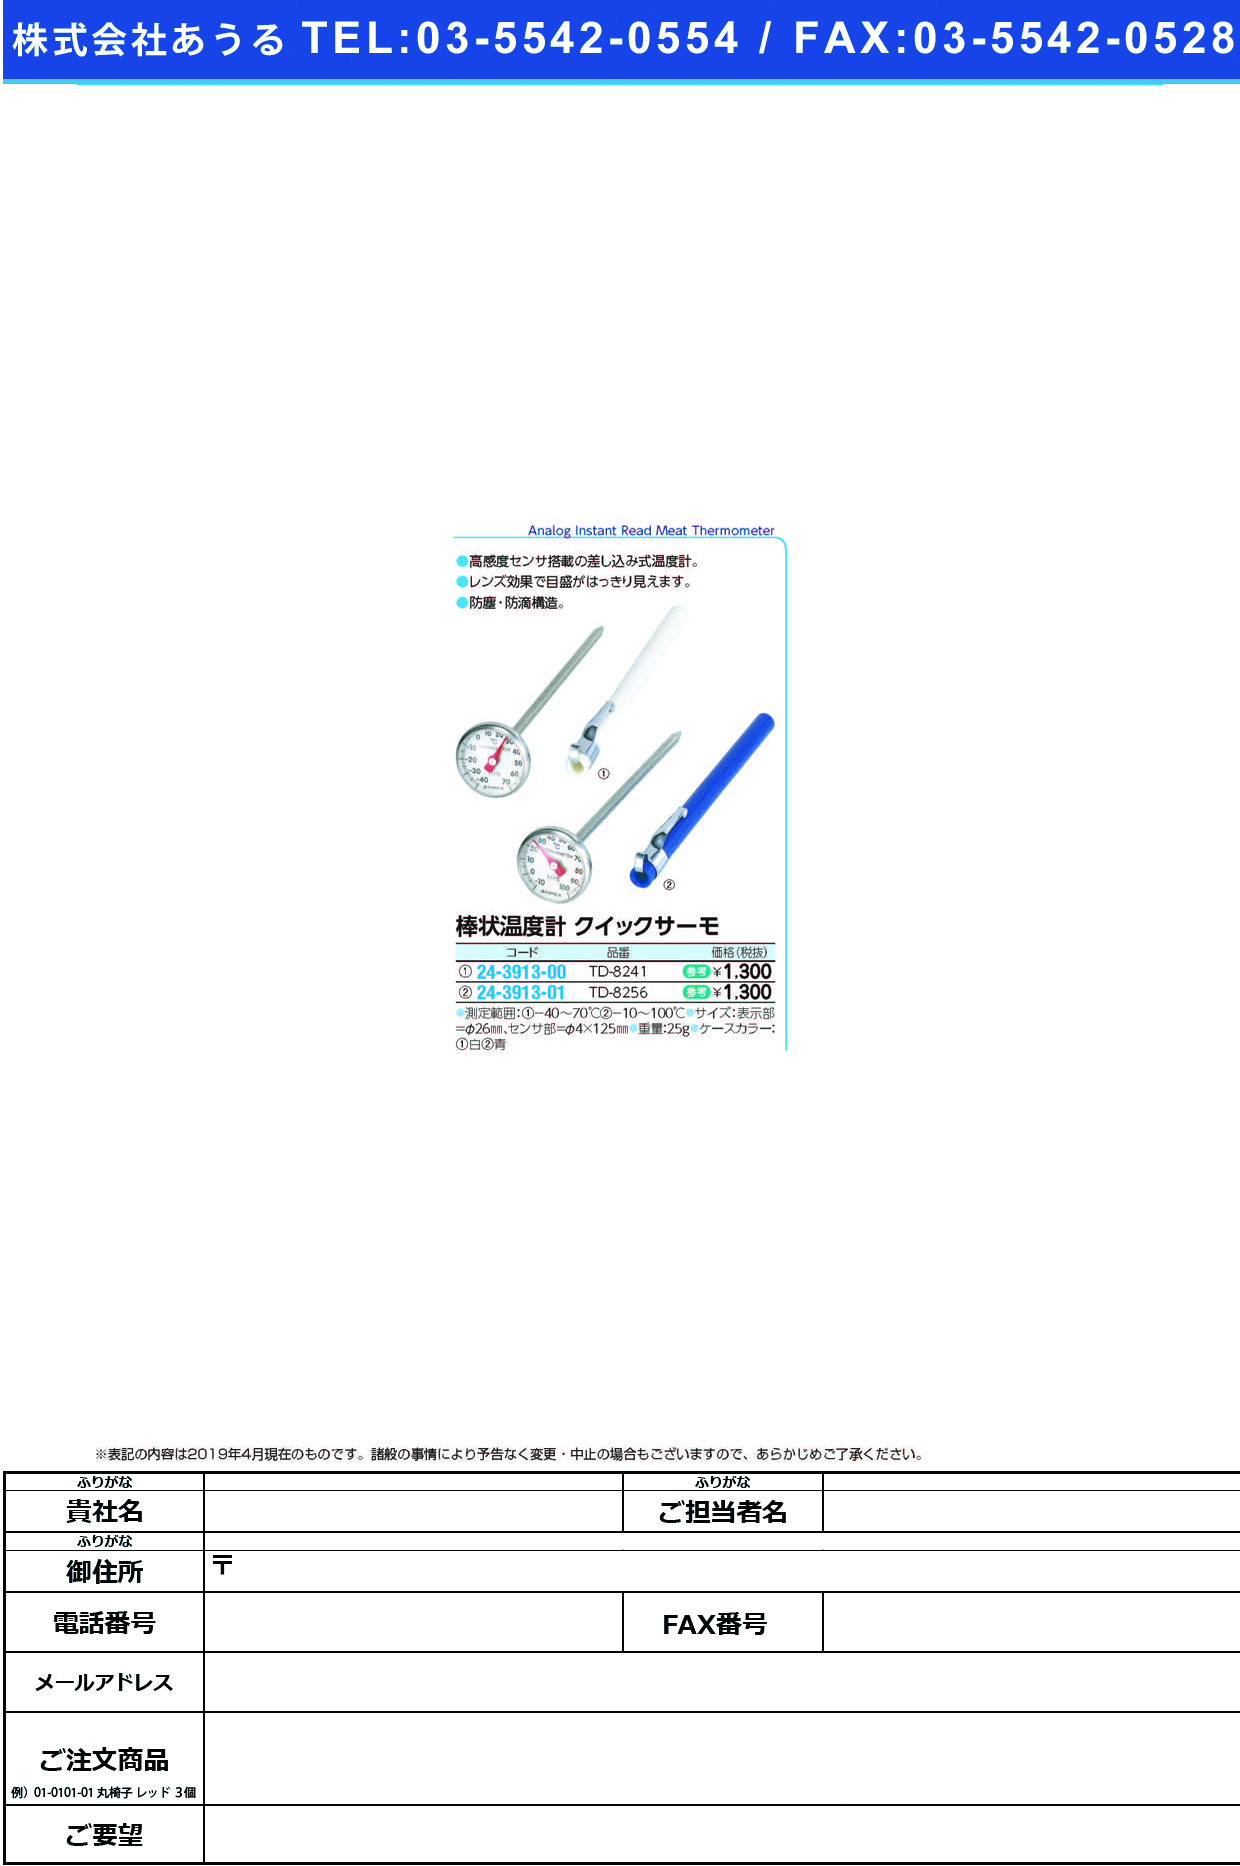 (24-3913-01)エンペックスクイックサーモ棒状温度計 TD-8256 ｴﾝﾍﾟｯｸｽｸｲｯｸｻｰﾓｵﾝﾄﾞｹｲ【1個単位】【2019年カタログ商品】